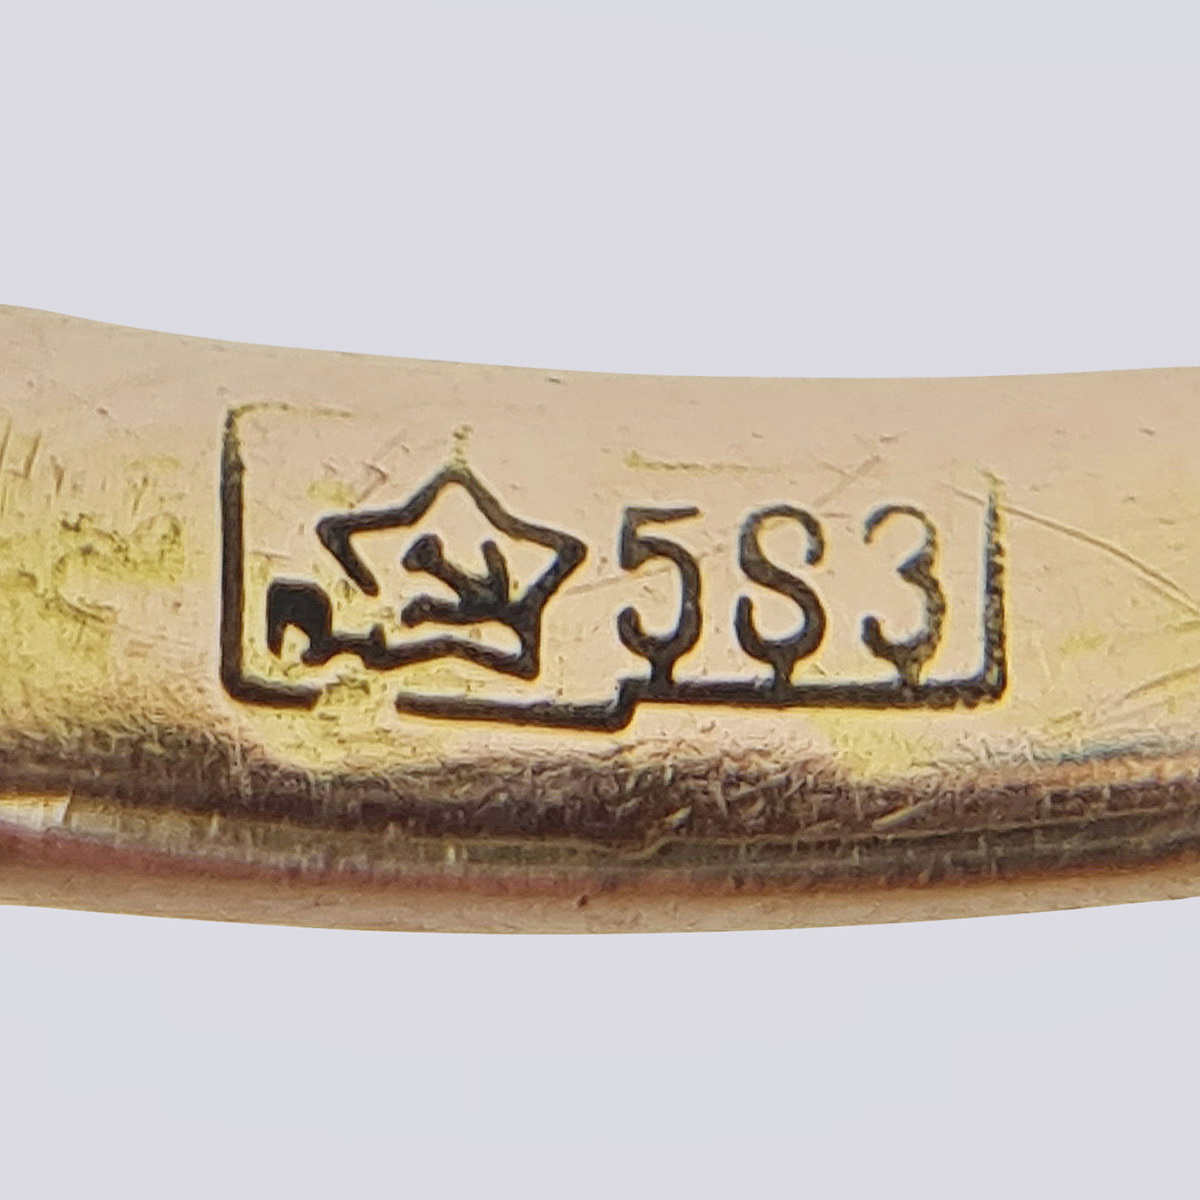 Золотое кольцо 583 пробы с природной бирюзой и природным морским жемчугом